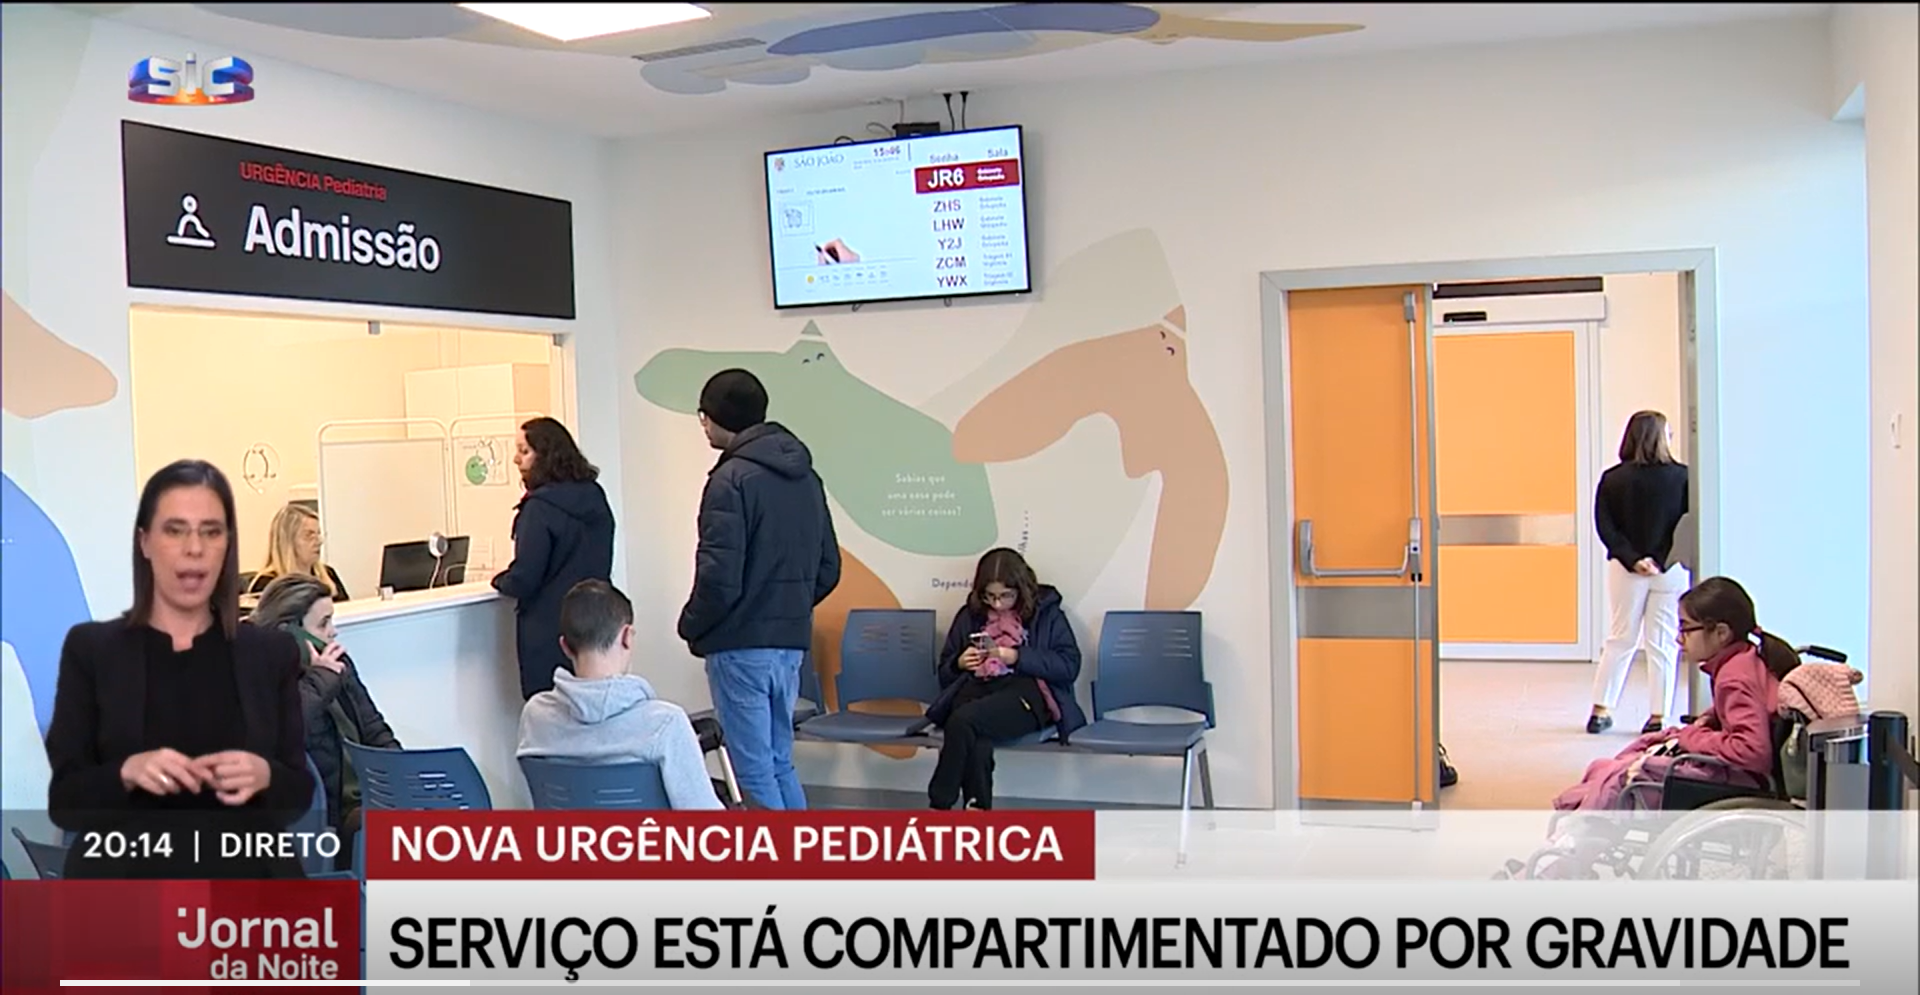 La unidad pediátrica del Hospital Sâo Joâo de Oporto, en imagen, ha incorporado la tecnología de Plexus Tech